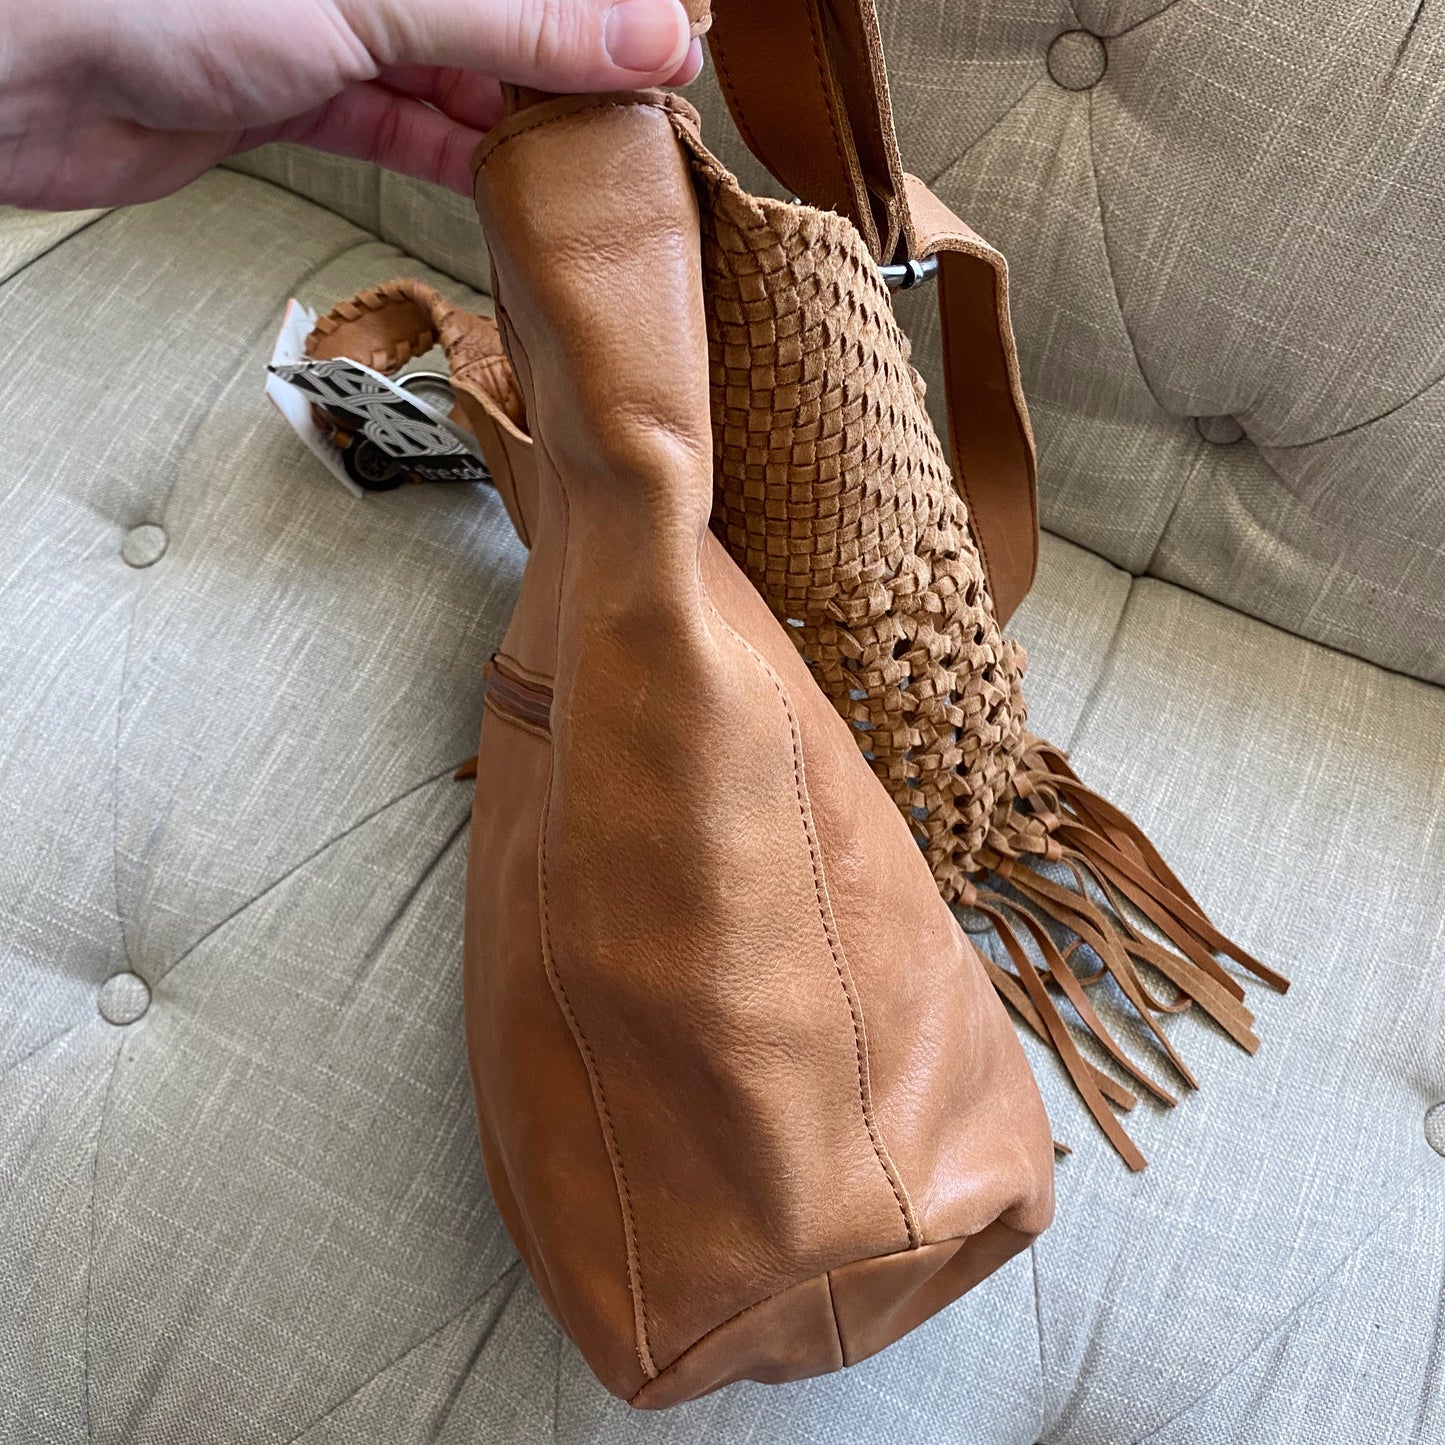 The Sak Filmore Vintage Finish Leather Hobo Bag